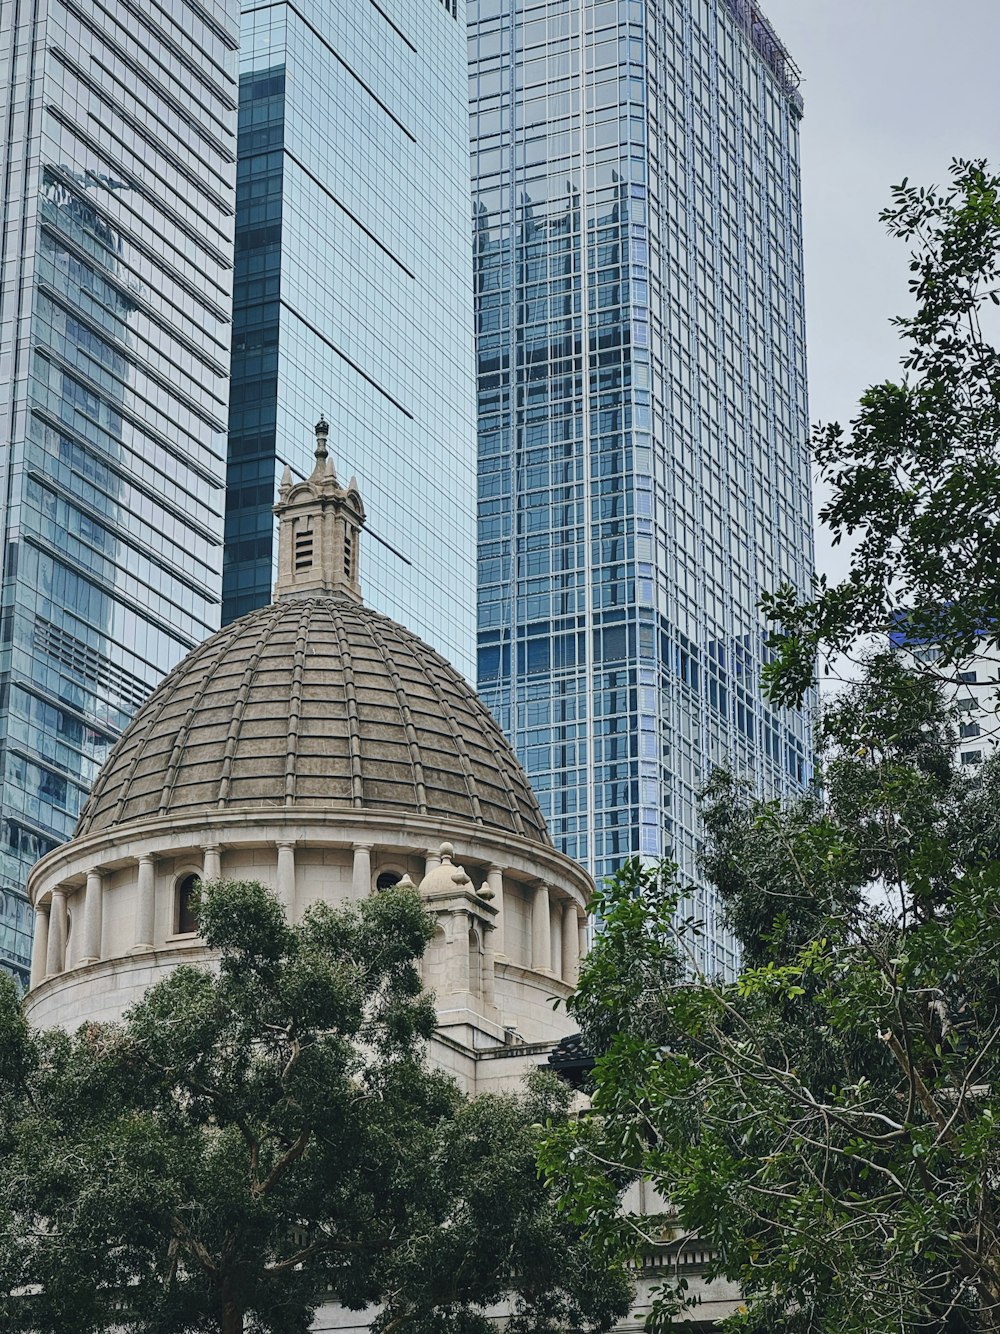 eine große Kuppel mit einer Uhr auf dem Dach eines Gebäudes